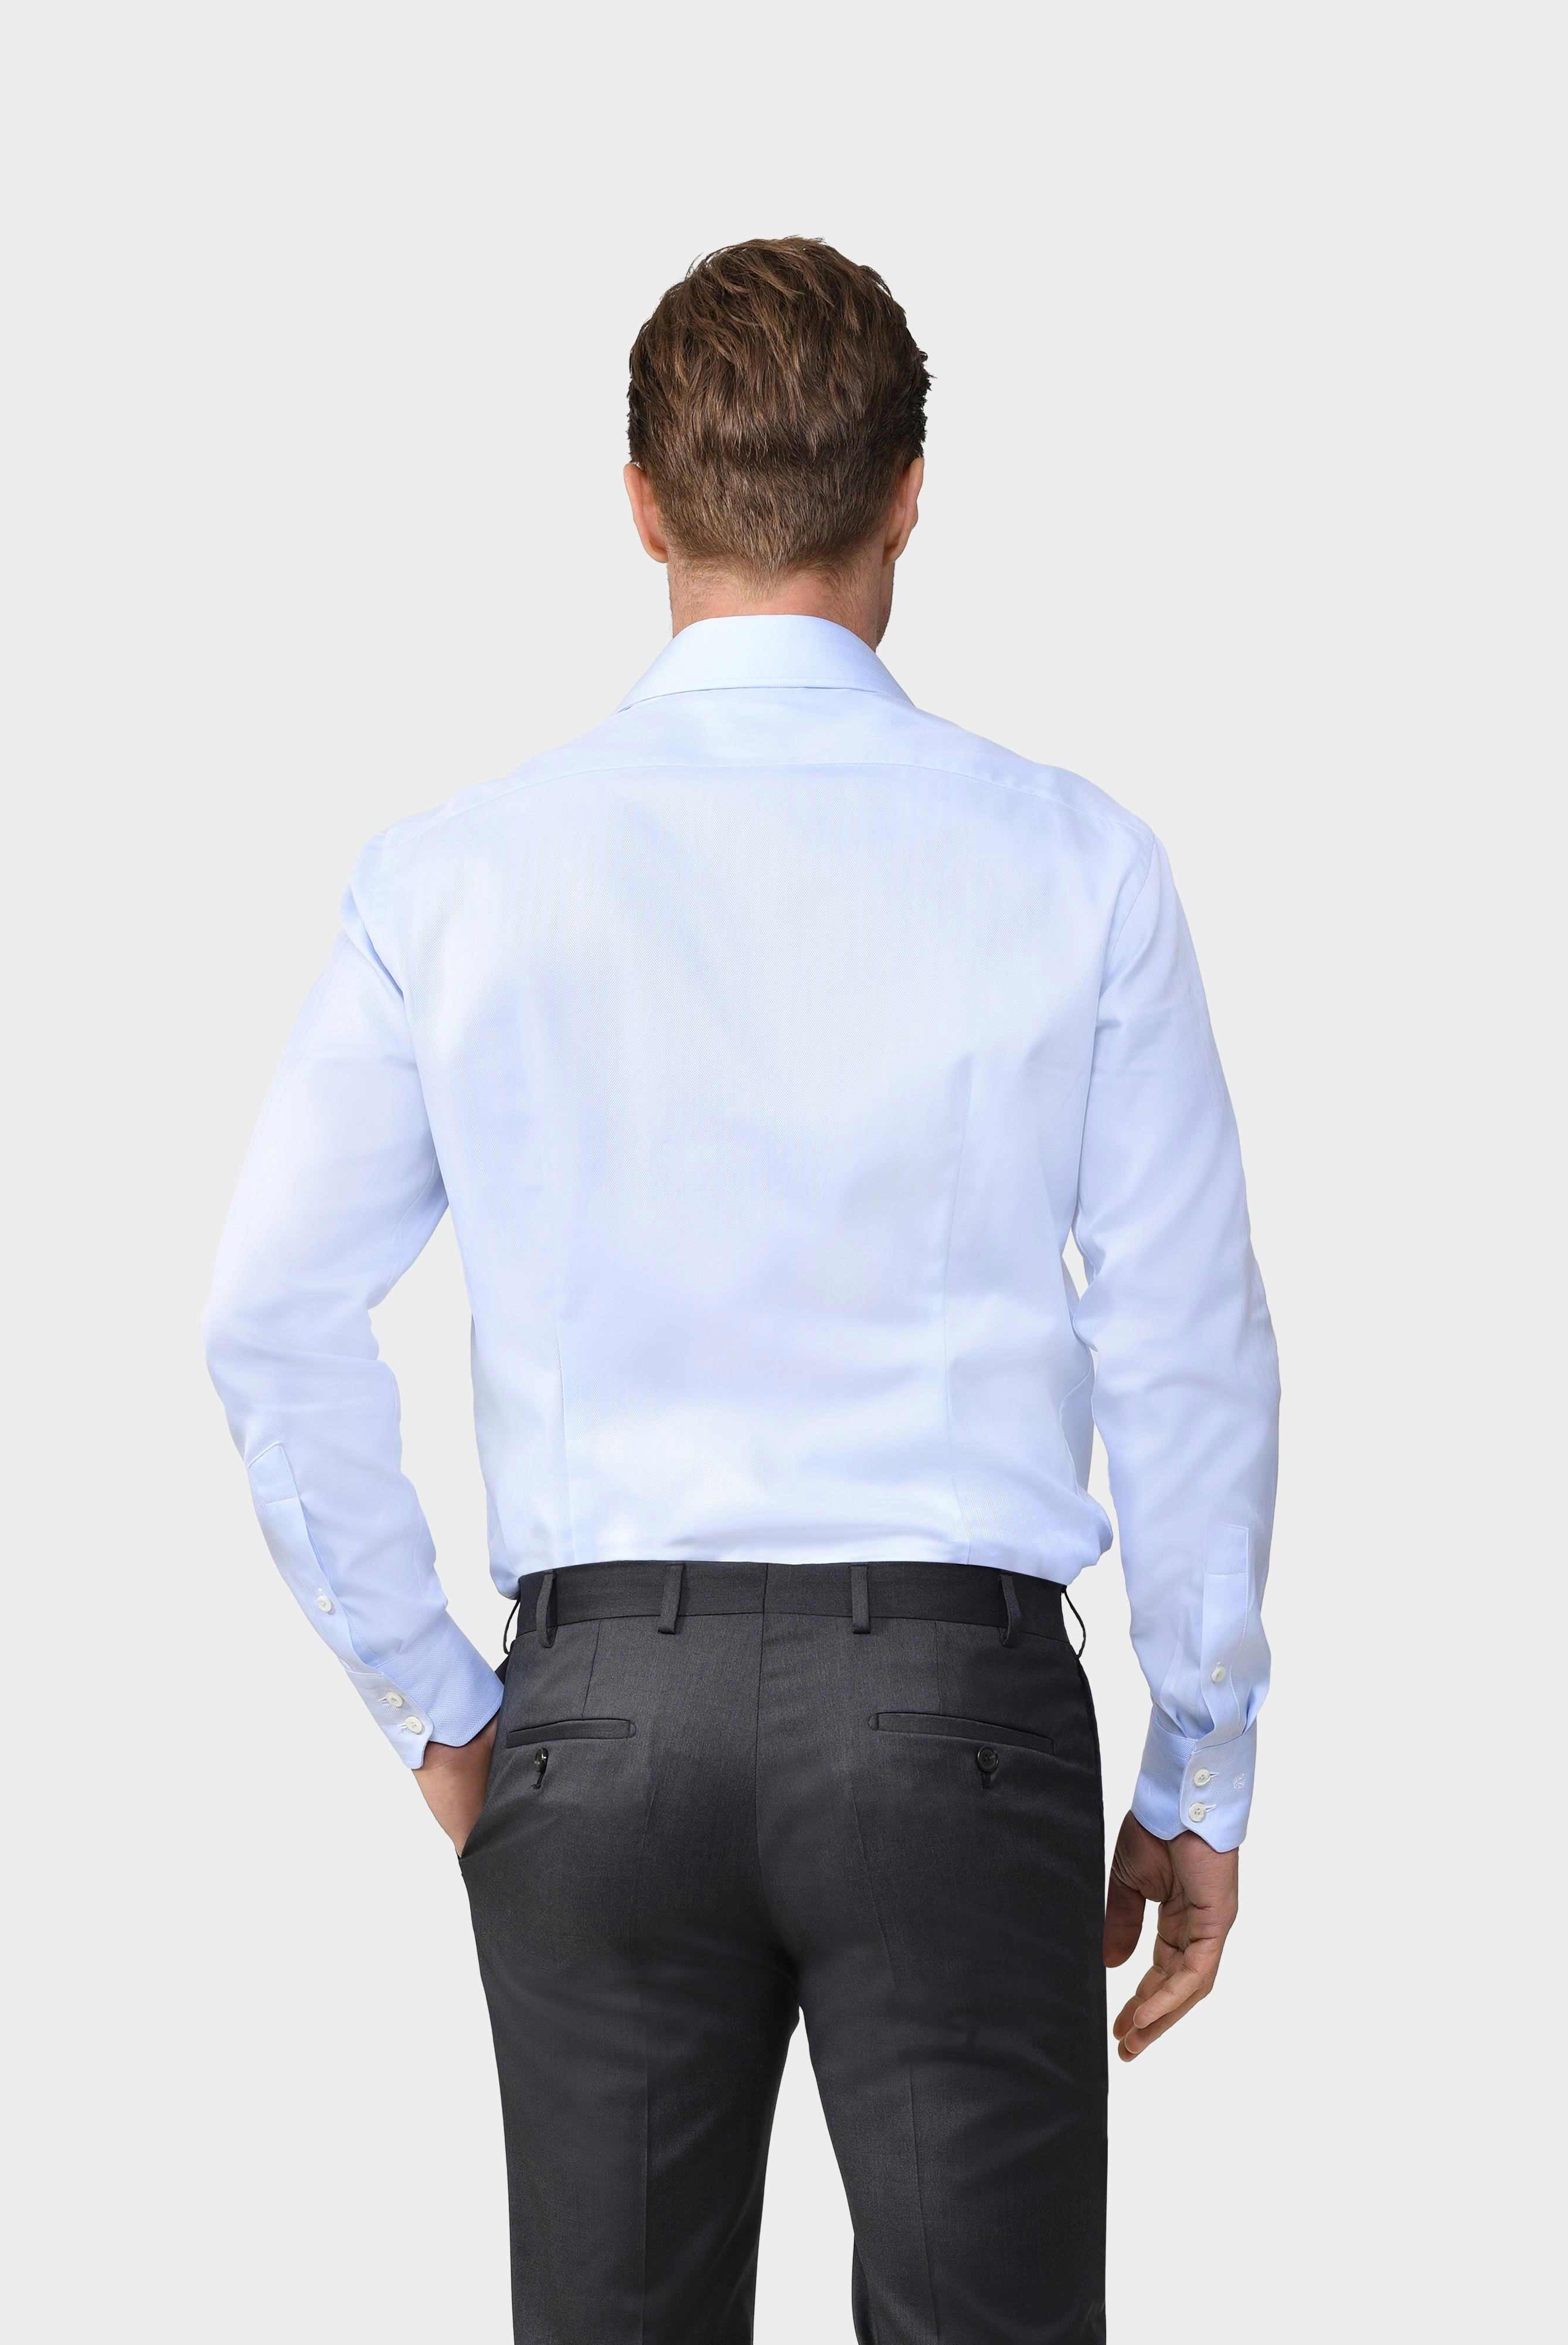 Business Shirts+Herringbone Twill Shirt Tailor Fit+20.2020.AV.102501.710.37